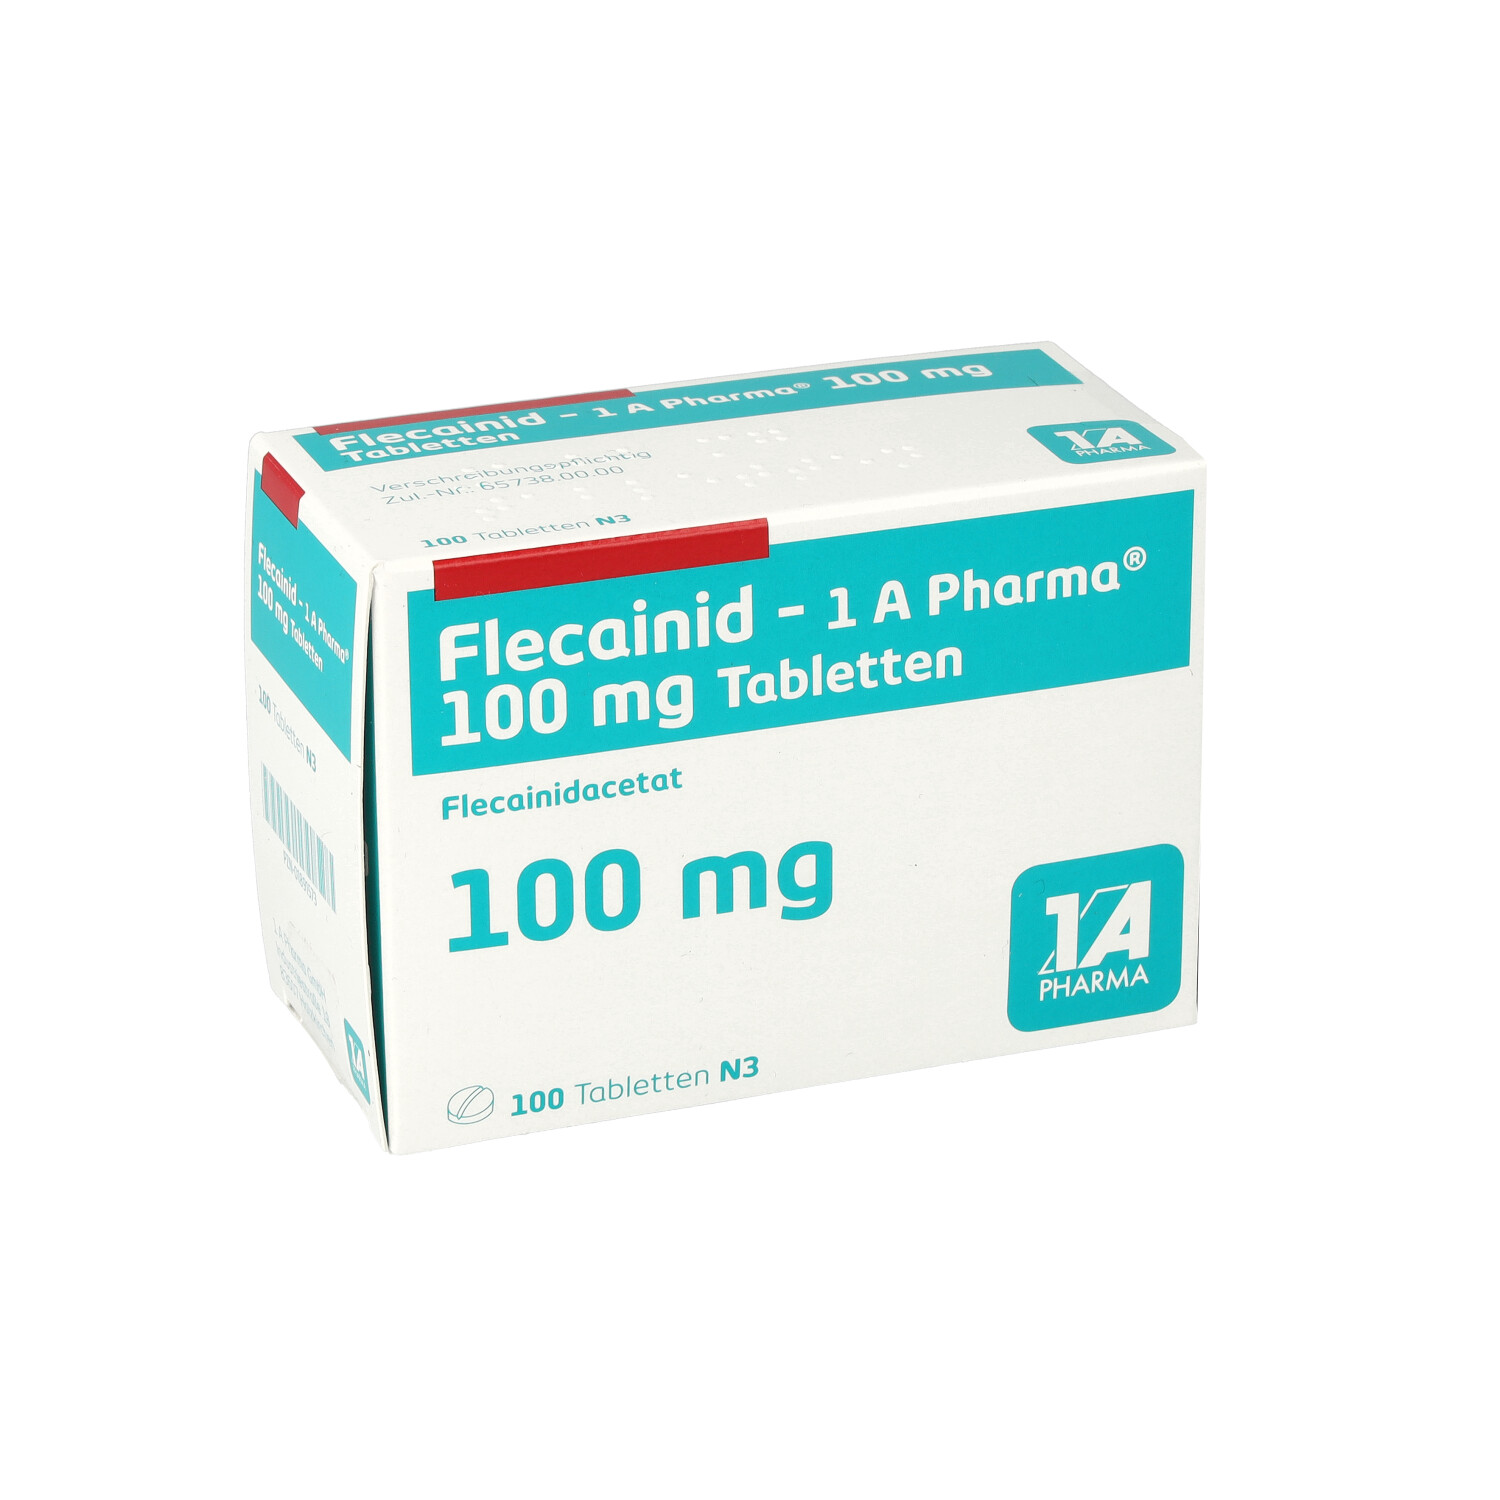 FLECAINID-1A Pharma 100 mg Tabletten